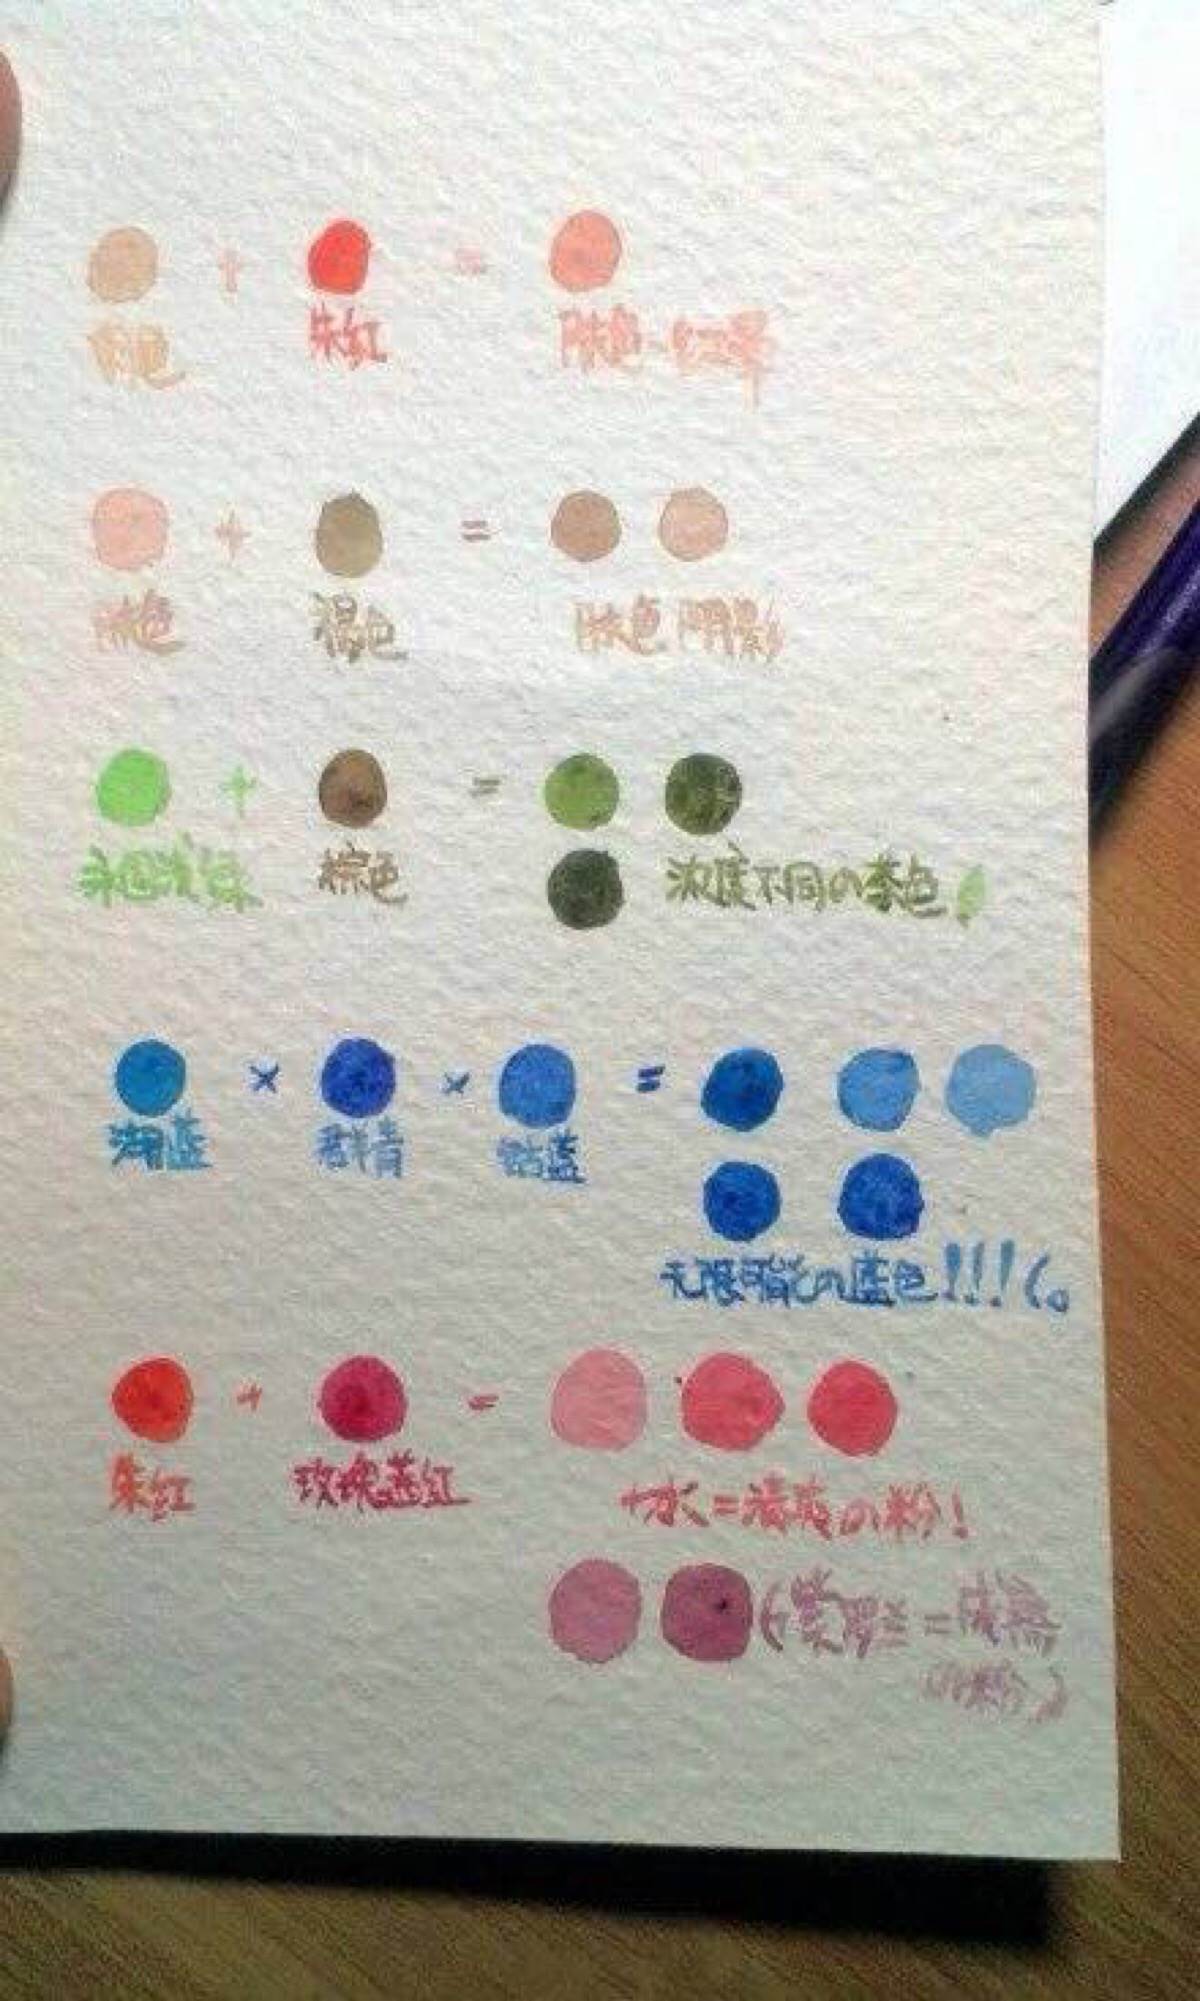 24色水彩笔颜色顺序图片